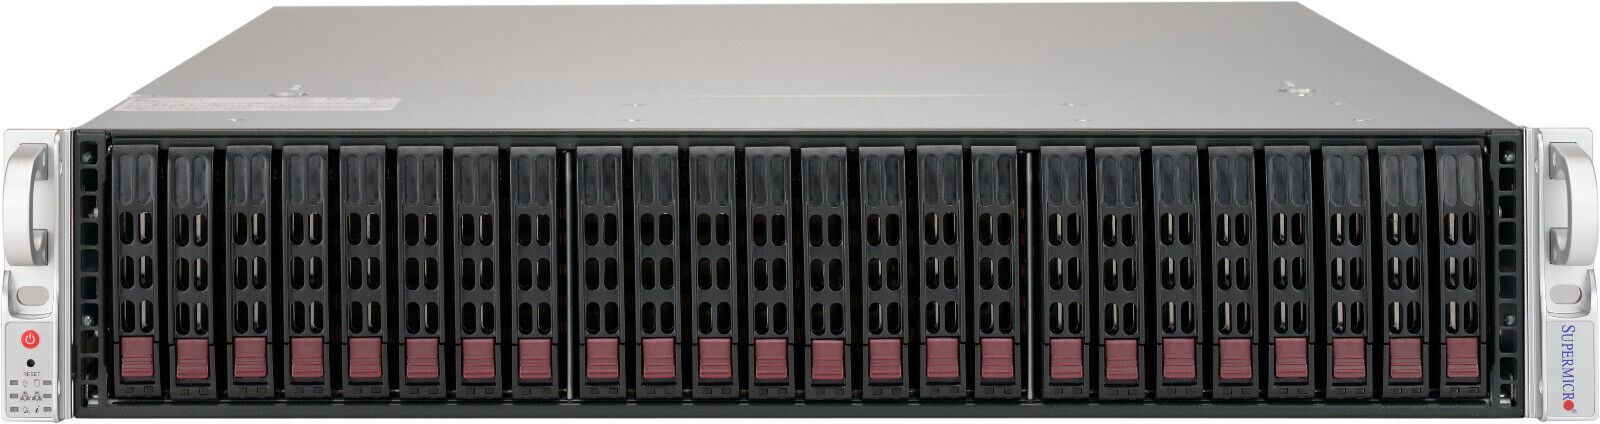 2U 24 Bay SFF IPASS Server X9DRI-LN4F+ 2x Xeon E5-2667 V2 32GB 24x Caddy Rails